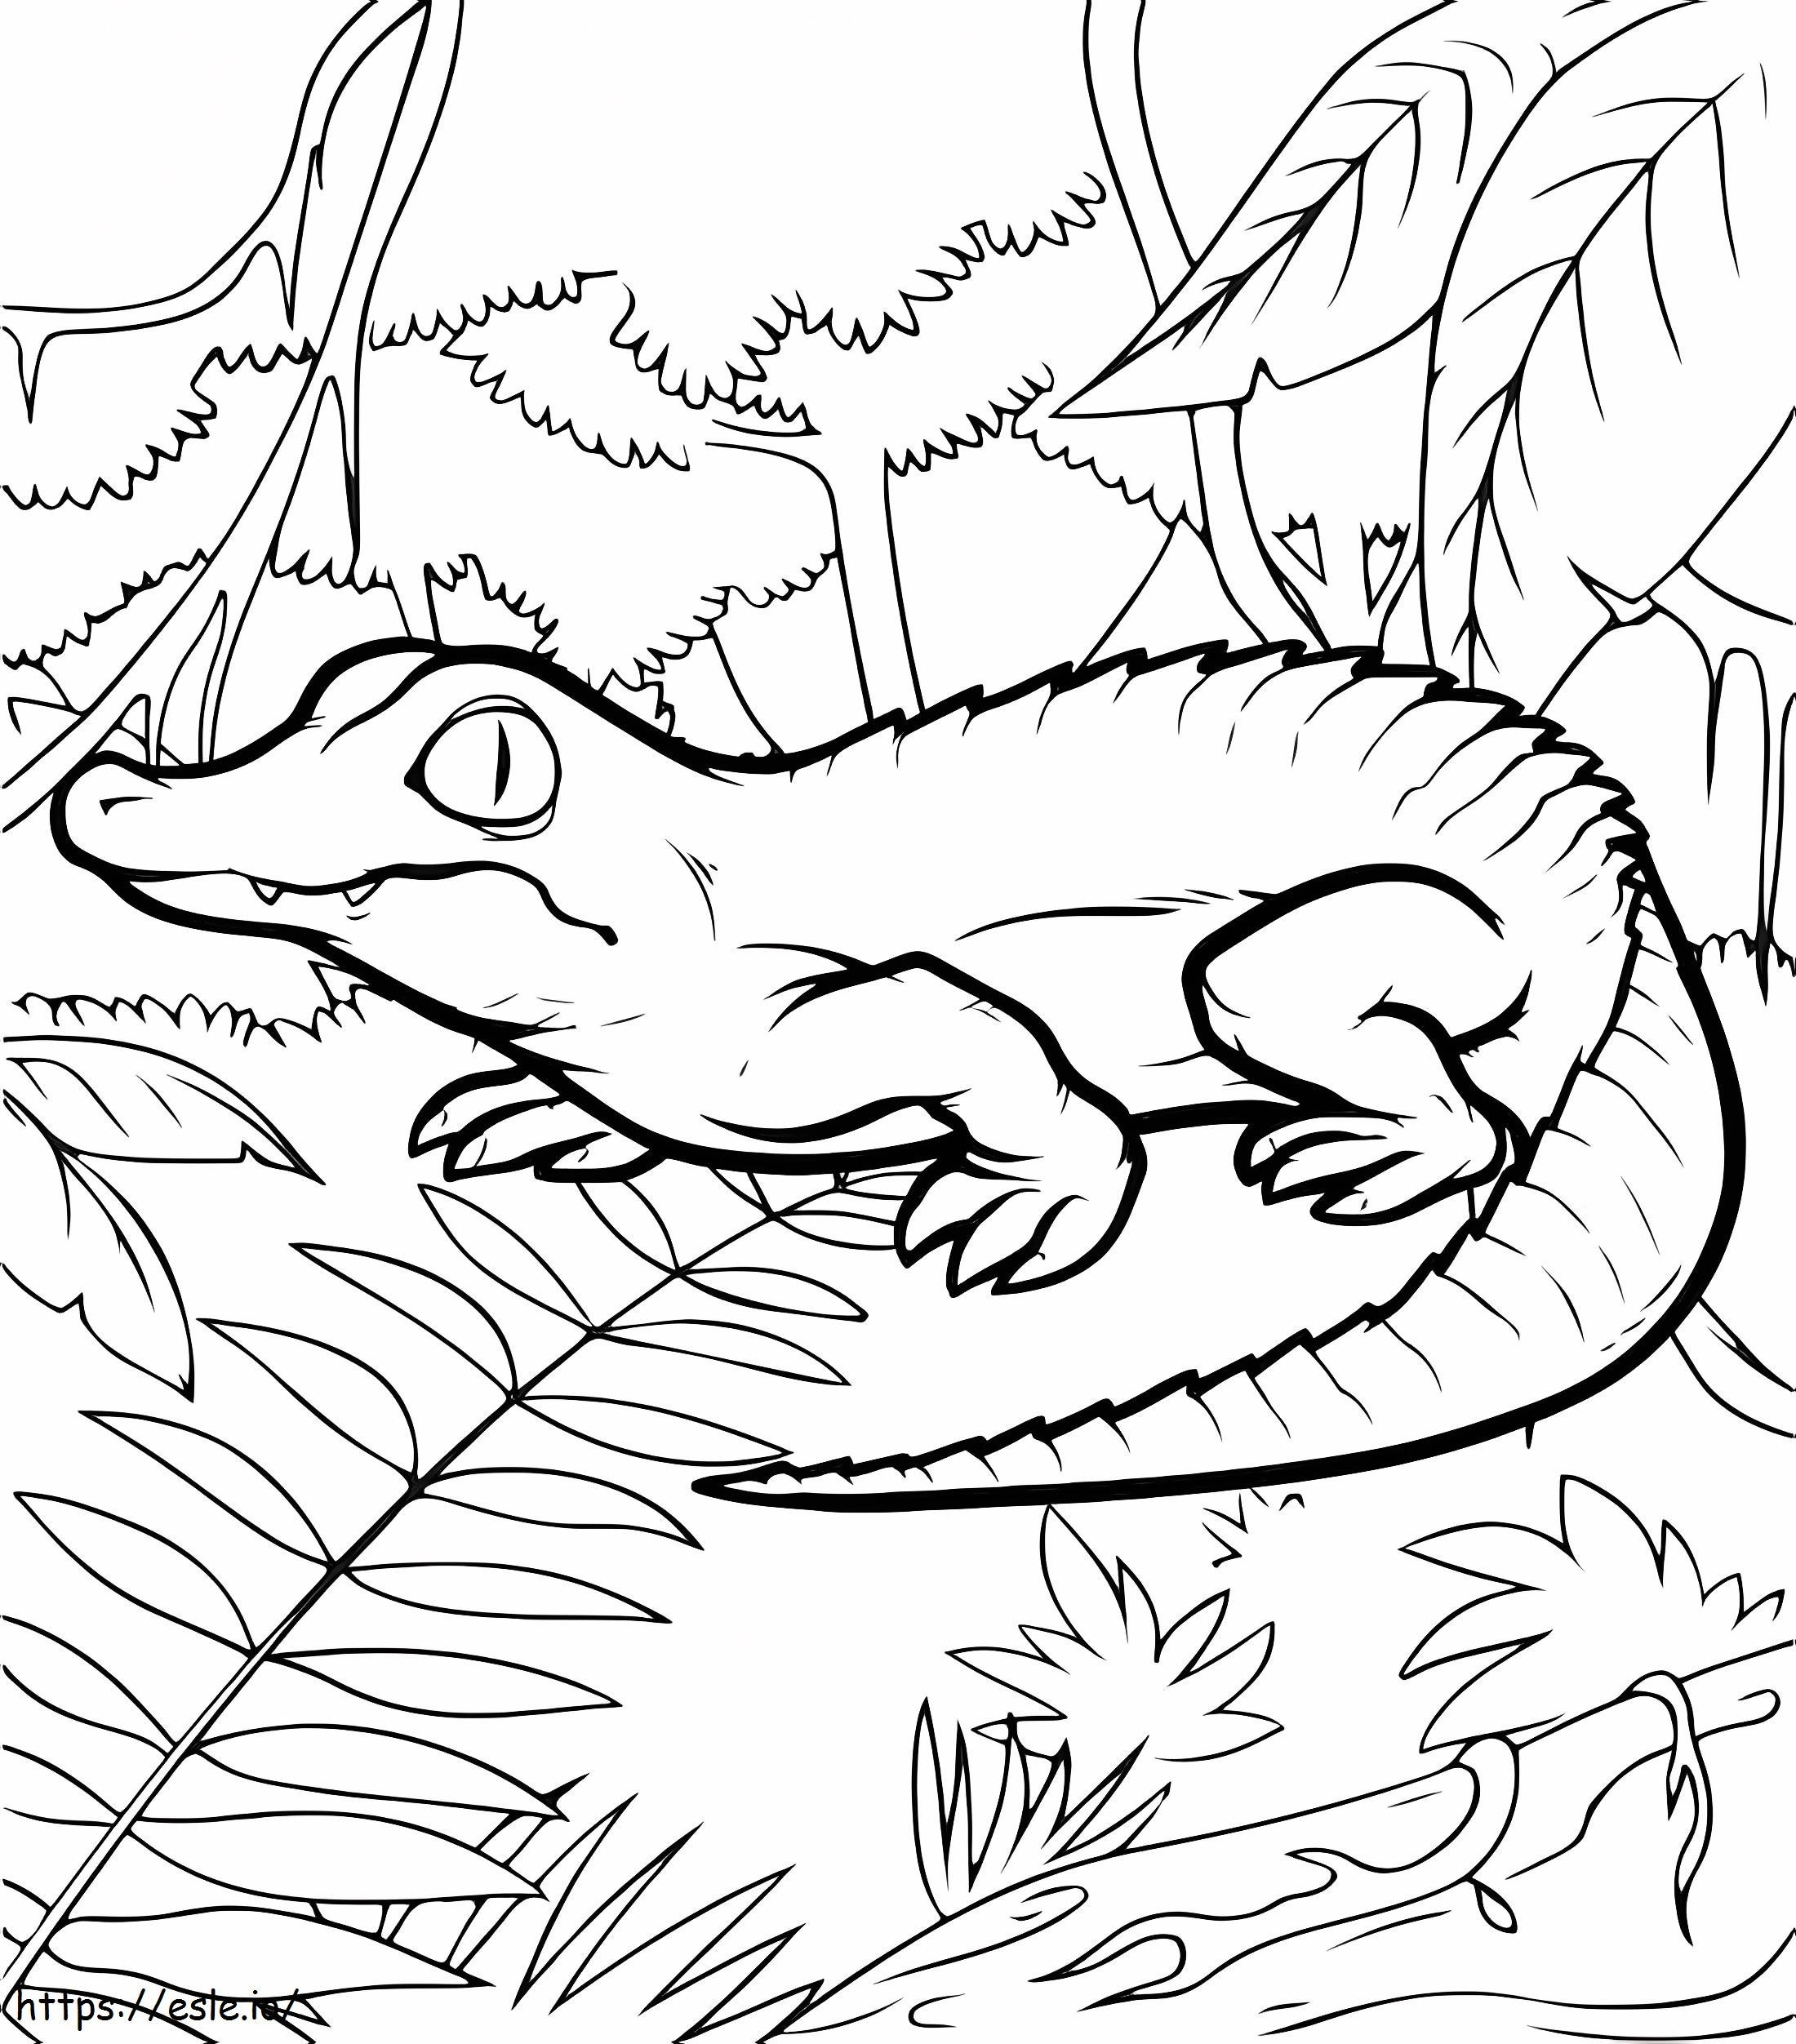 Krokodil az Erdőben kifestő